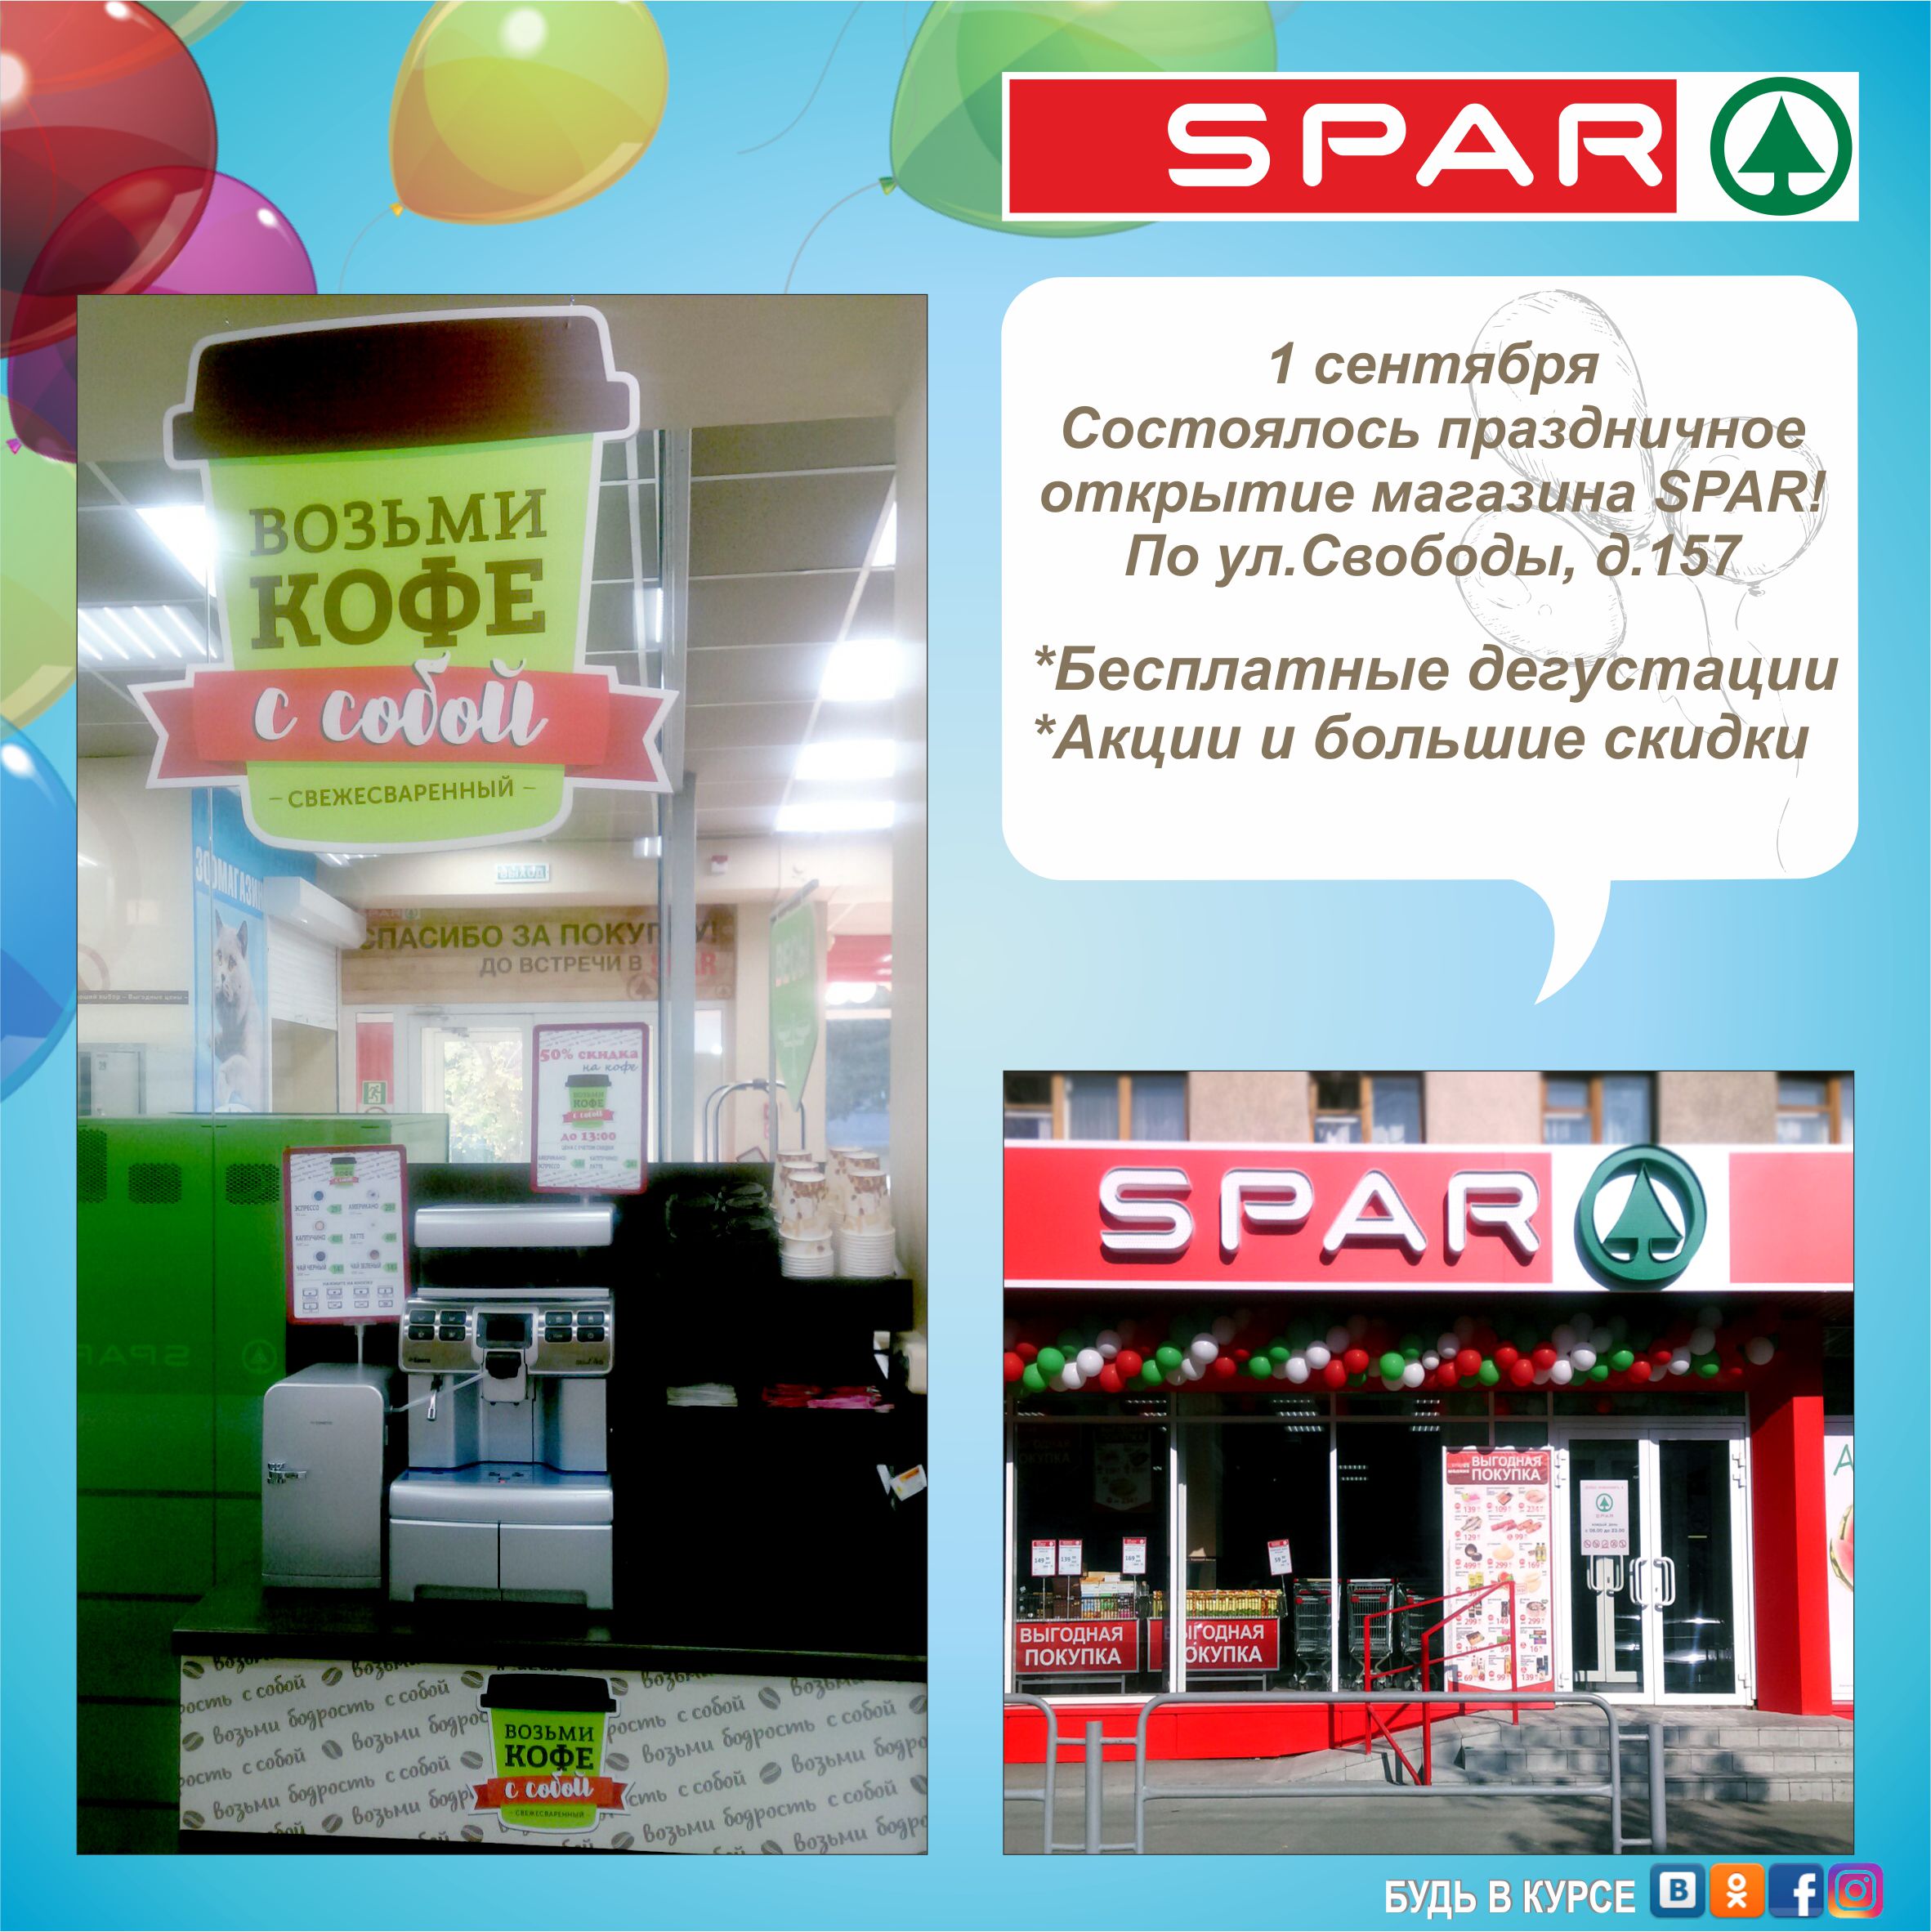 1 Сентября открылся новый магазин SPAR!